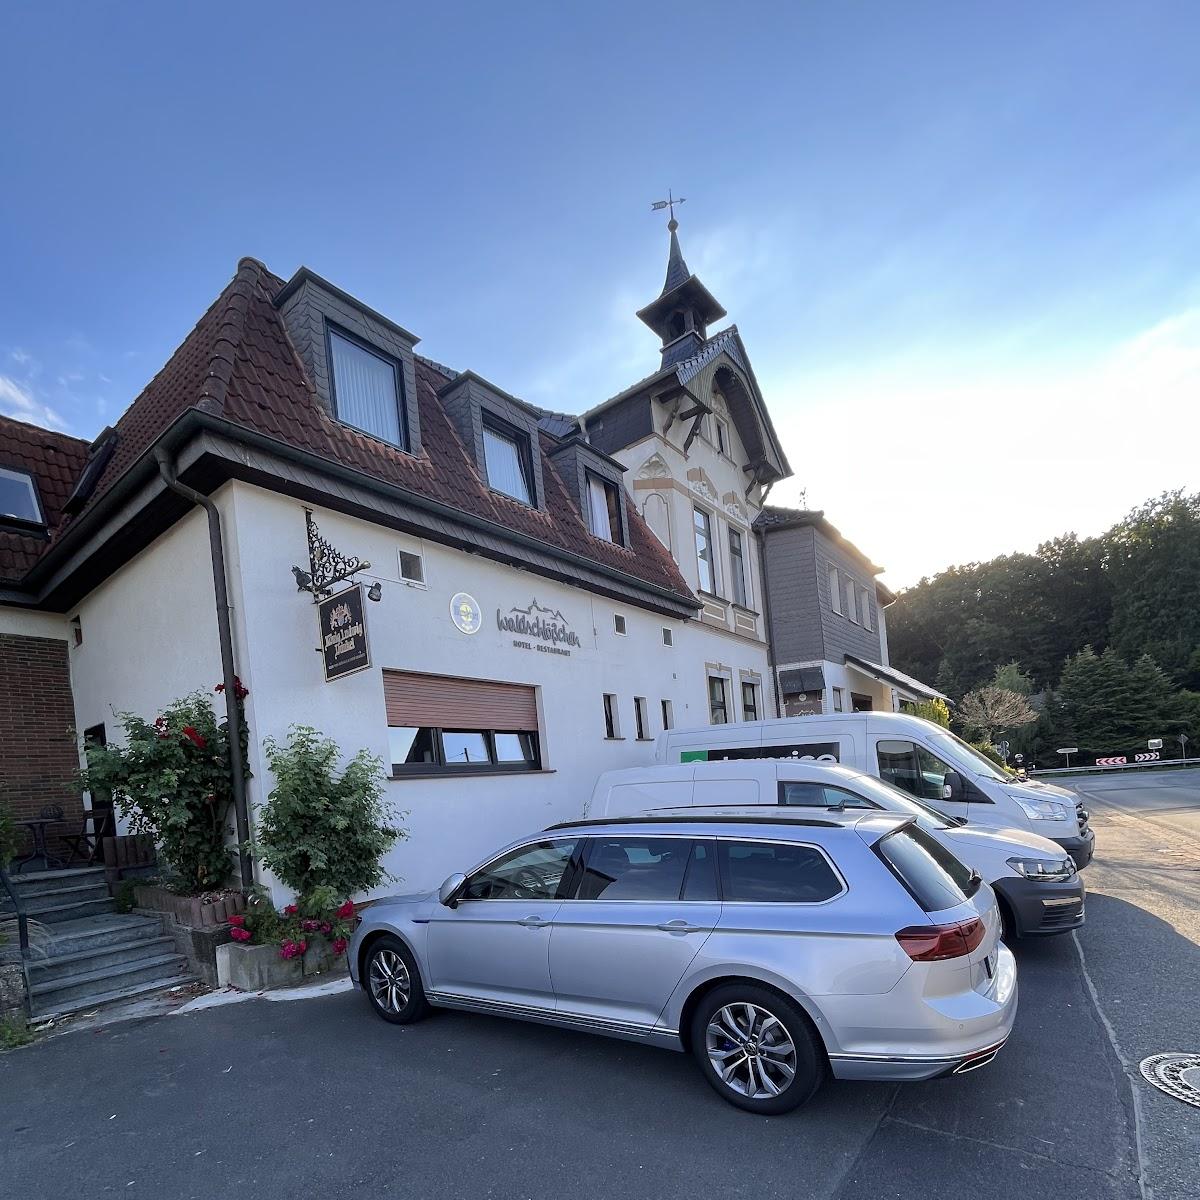 Restaurant "Hotel Waldschlösschen" in Arnsberg